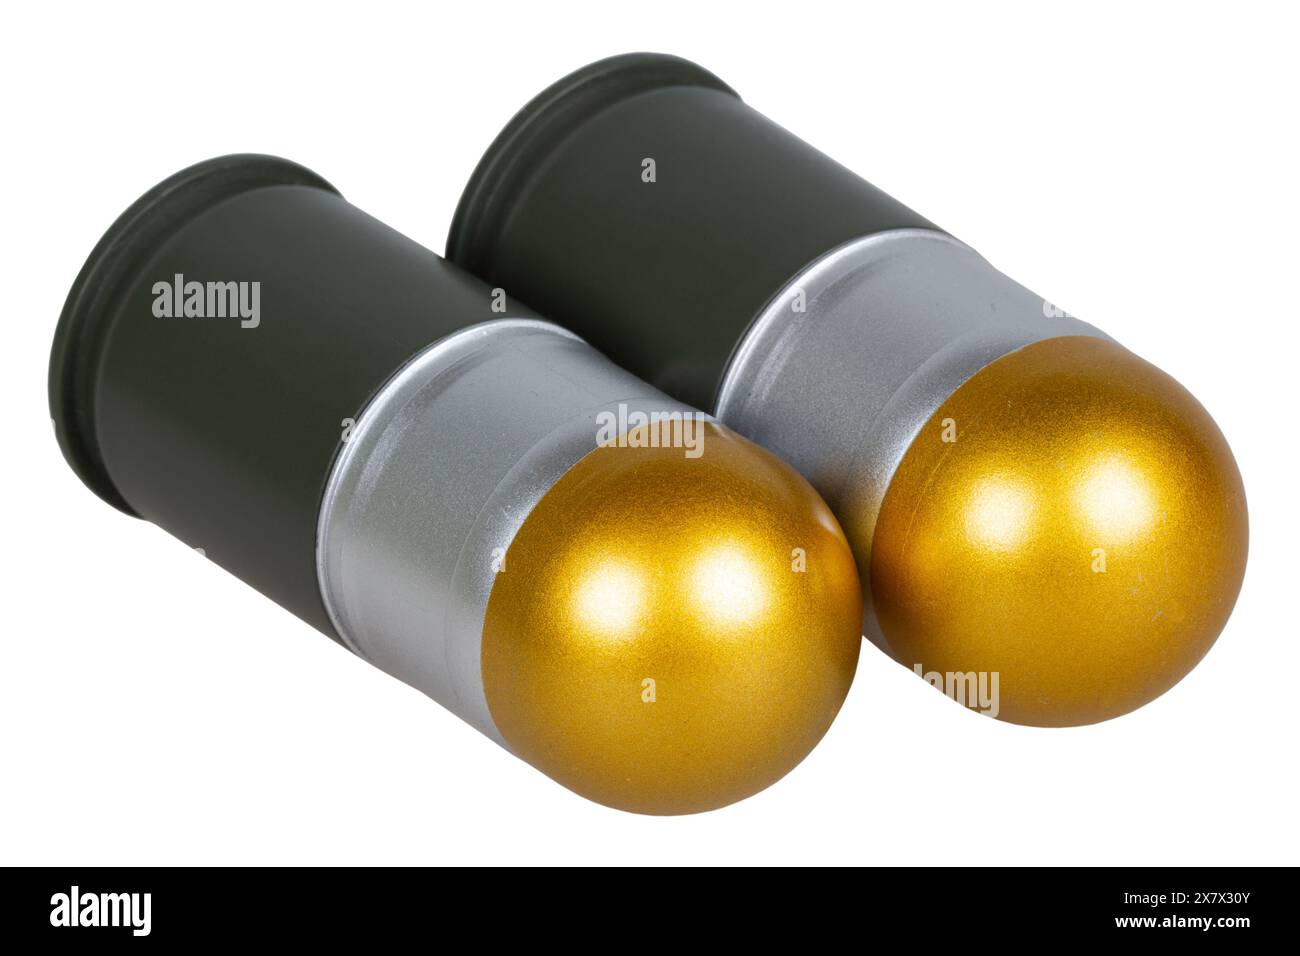 cartouches de 40 mm pour lance-grenades automatique isolées sur un blanc Banque D'Images